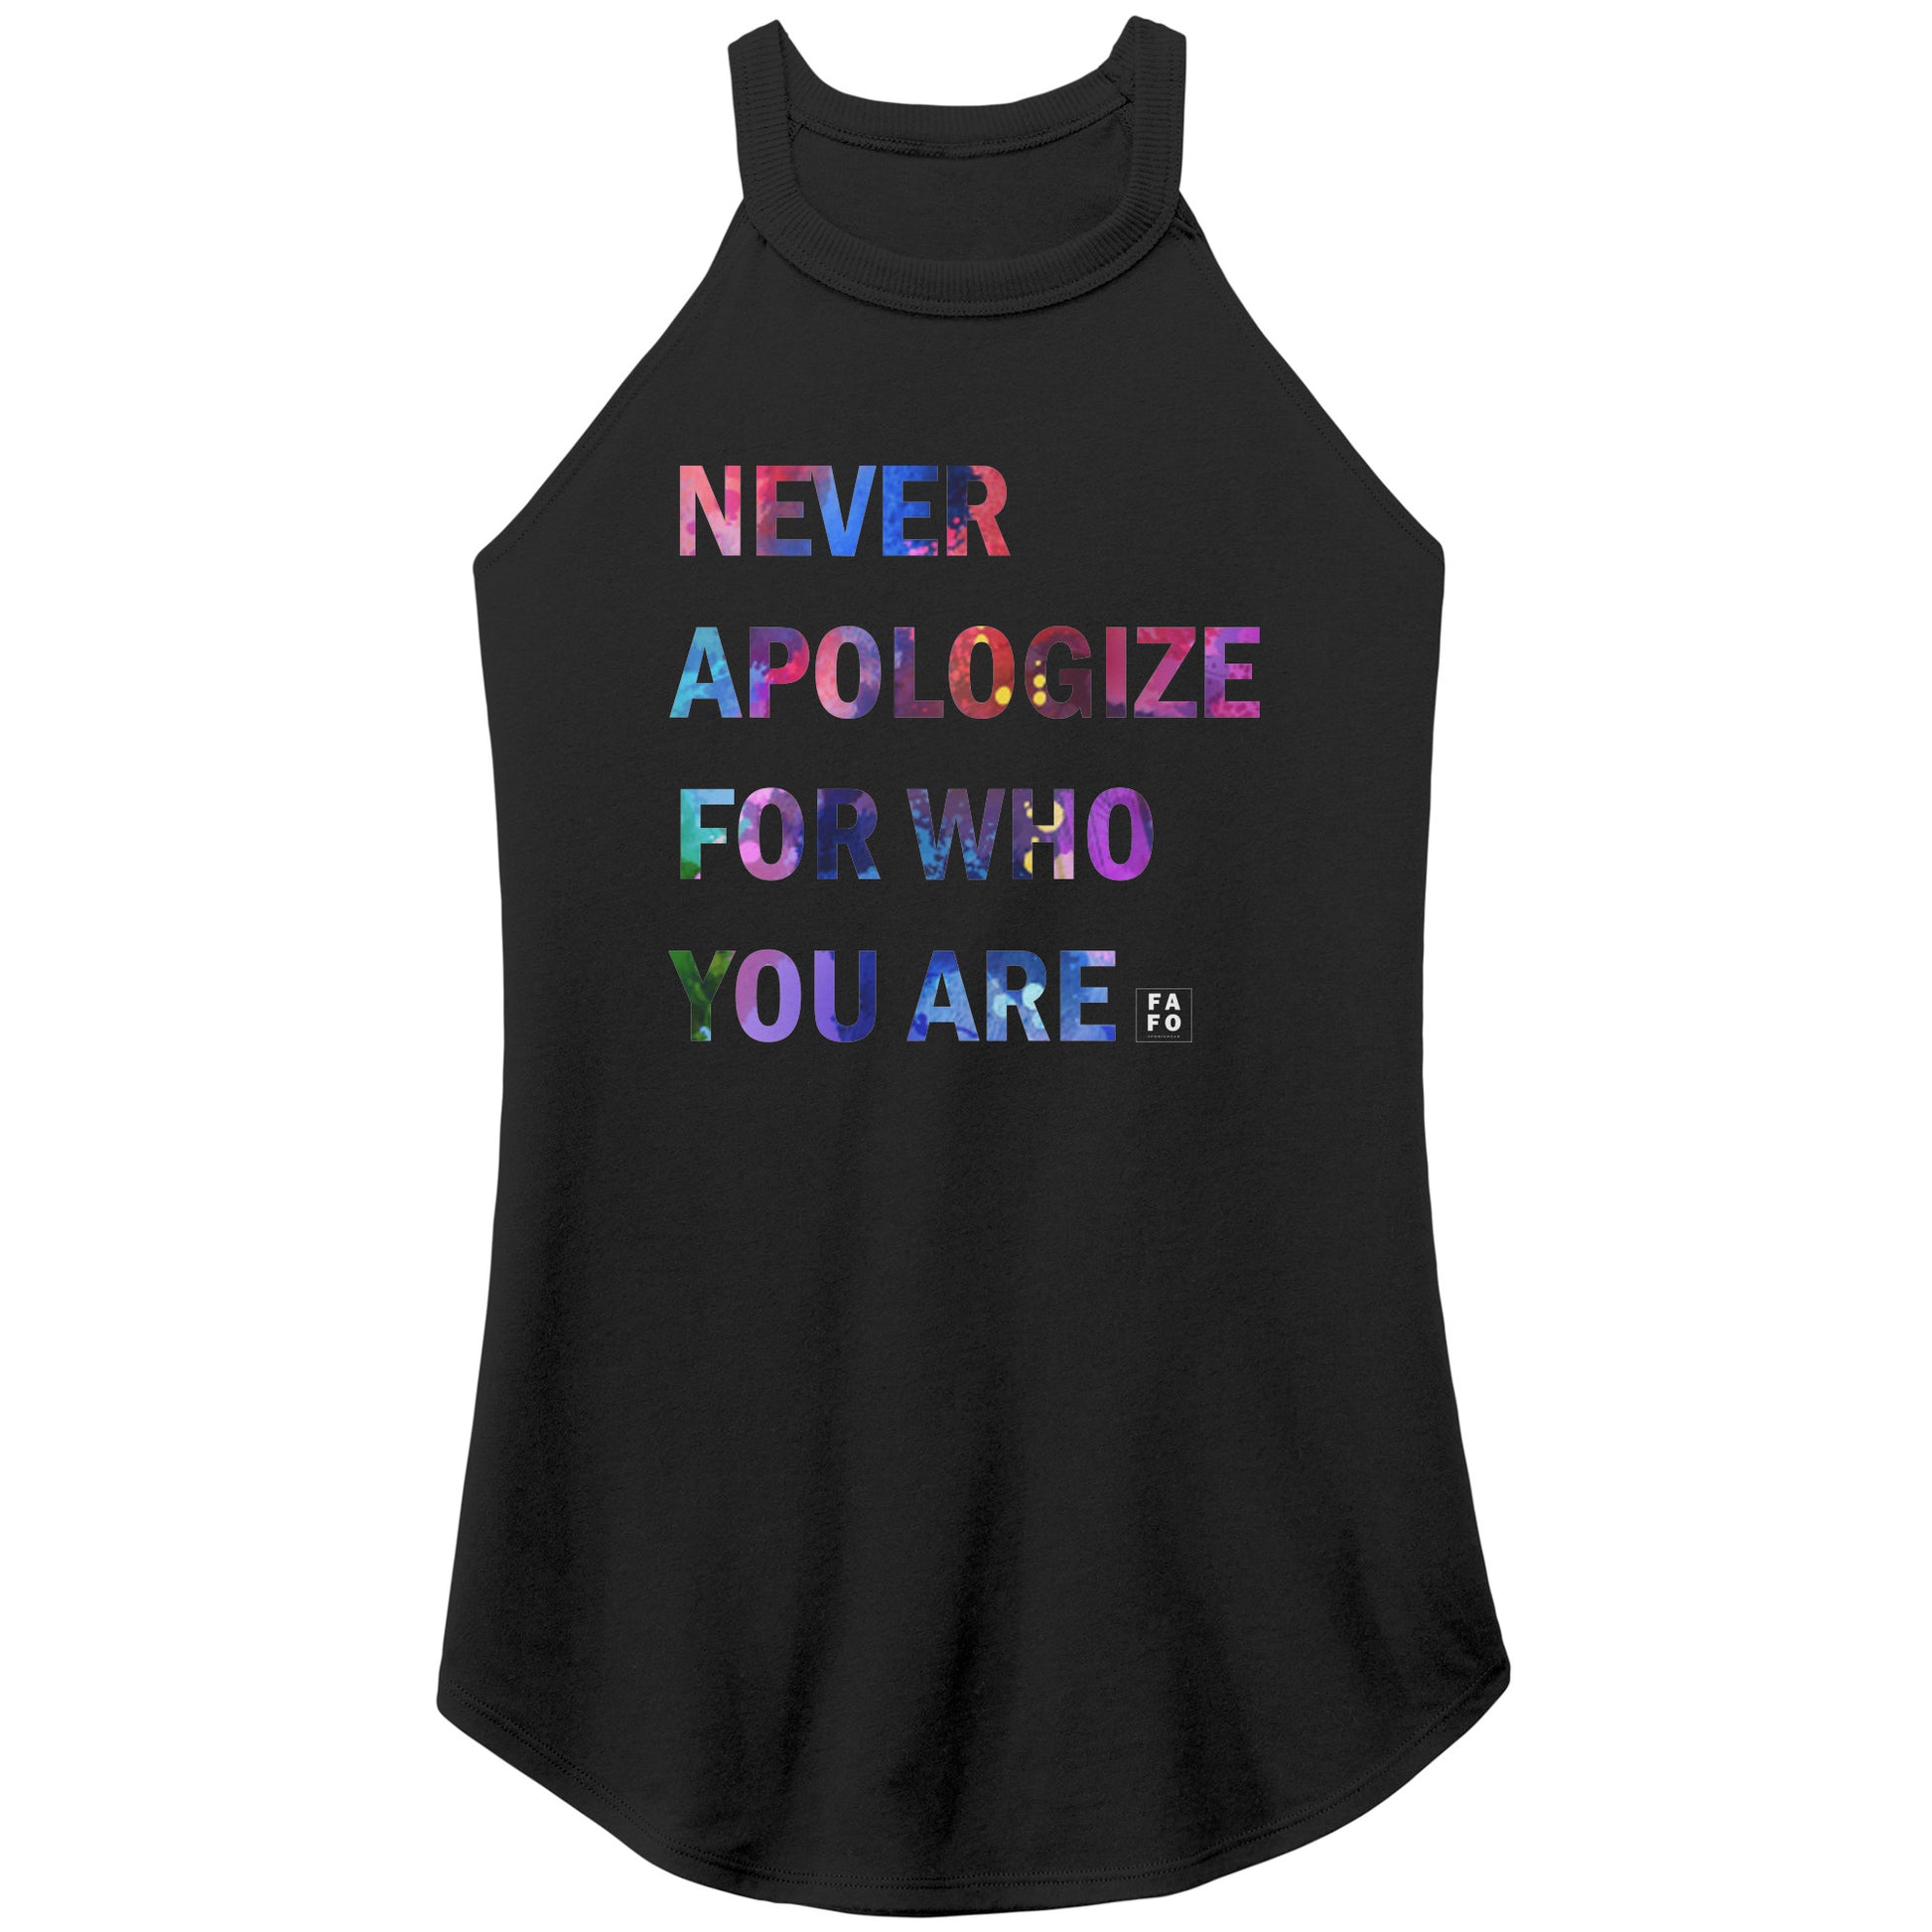 Rocker Tank - Never Apologize - FAFO Sportswear - Black